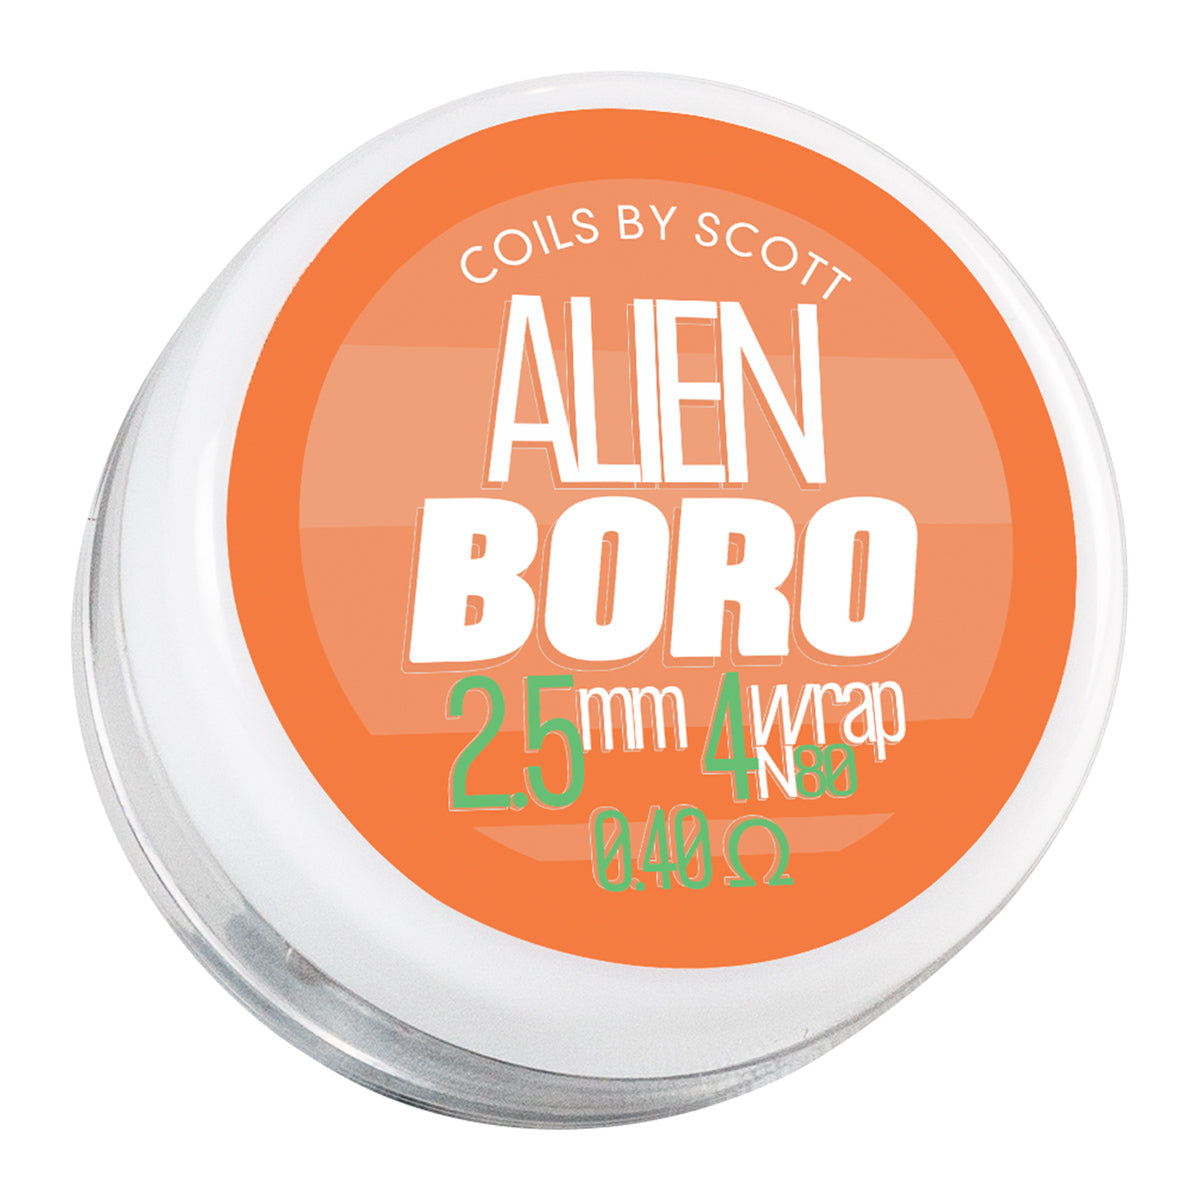 0.40 Boro Alien Clapton Coils by Coils by Scott